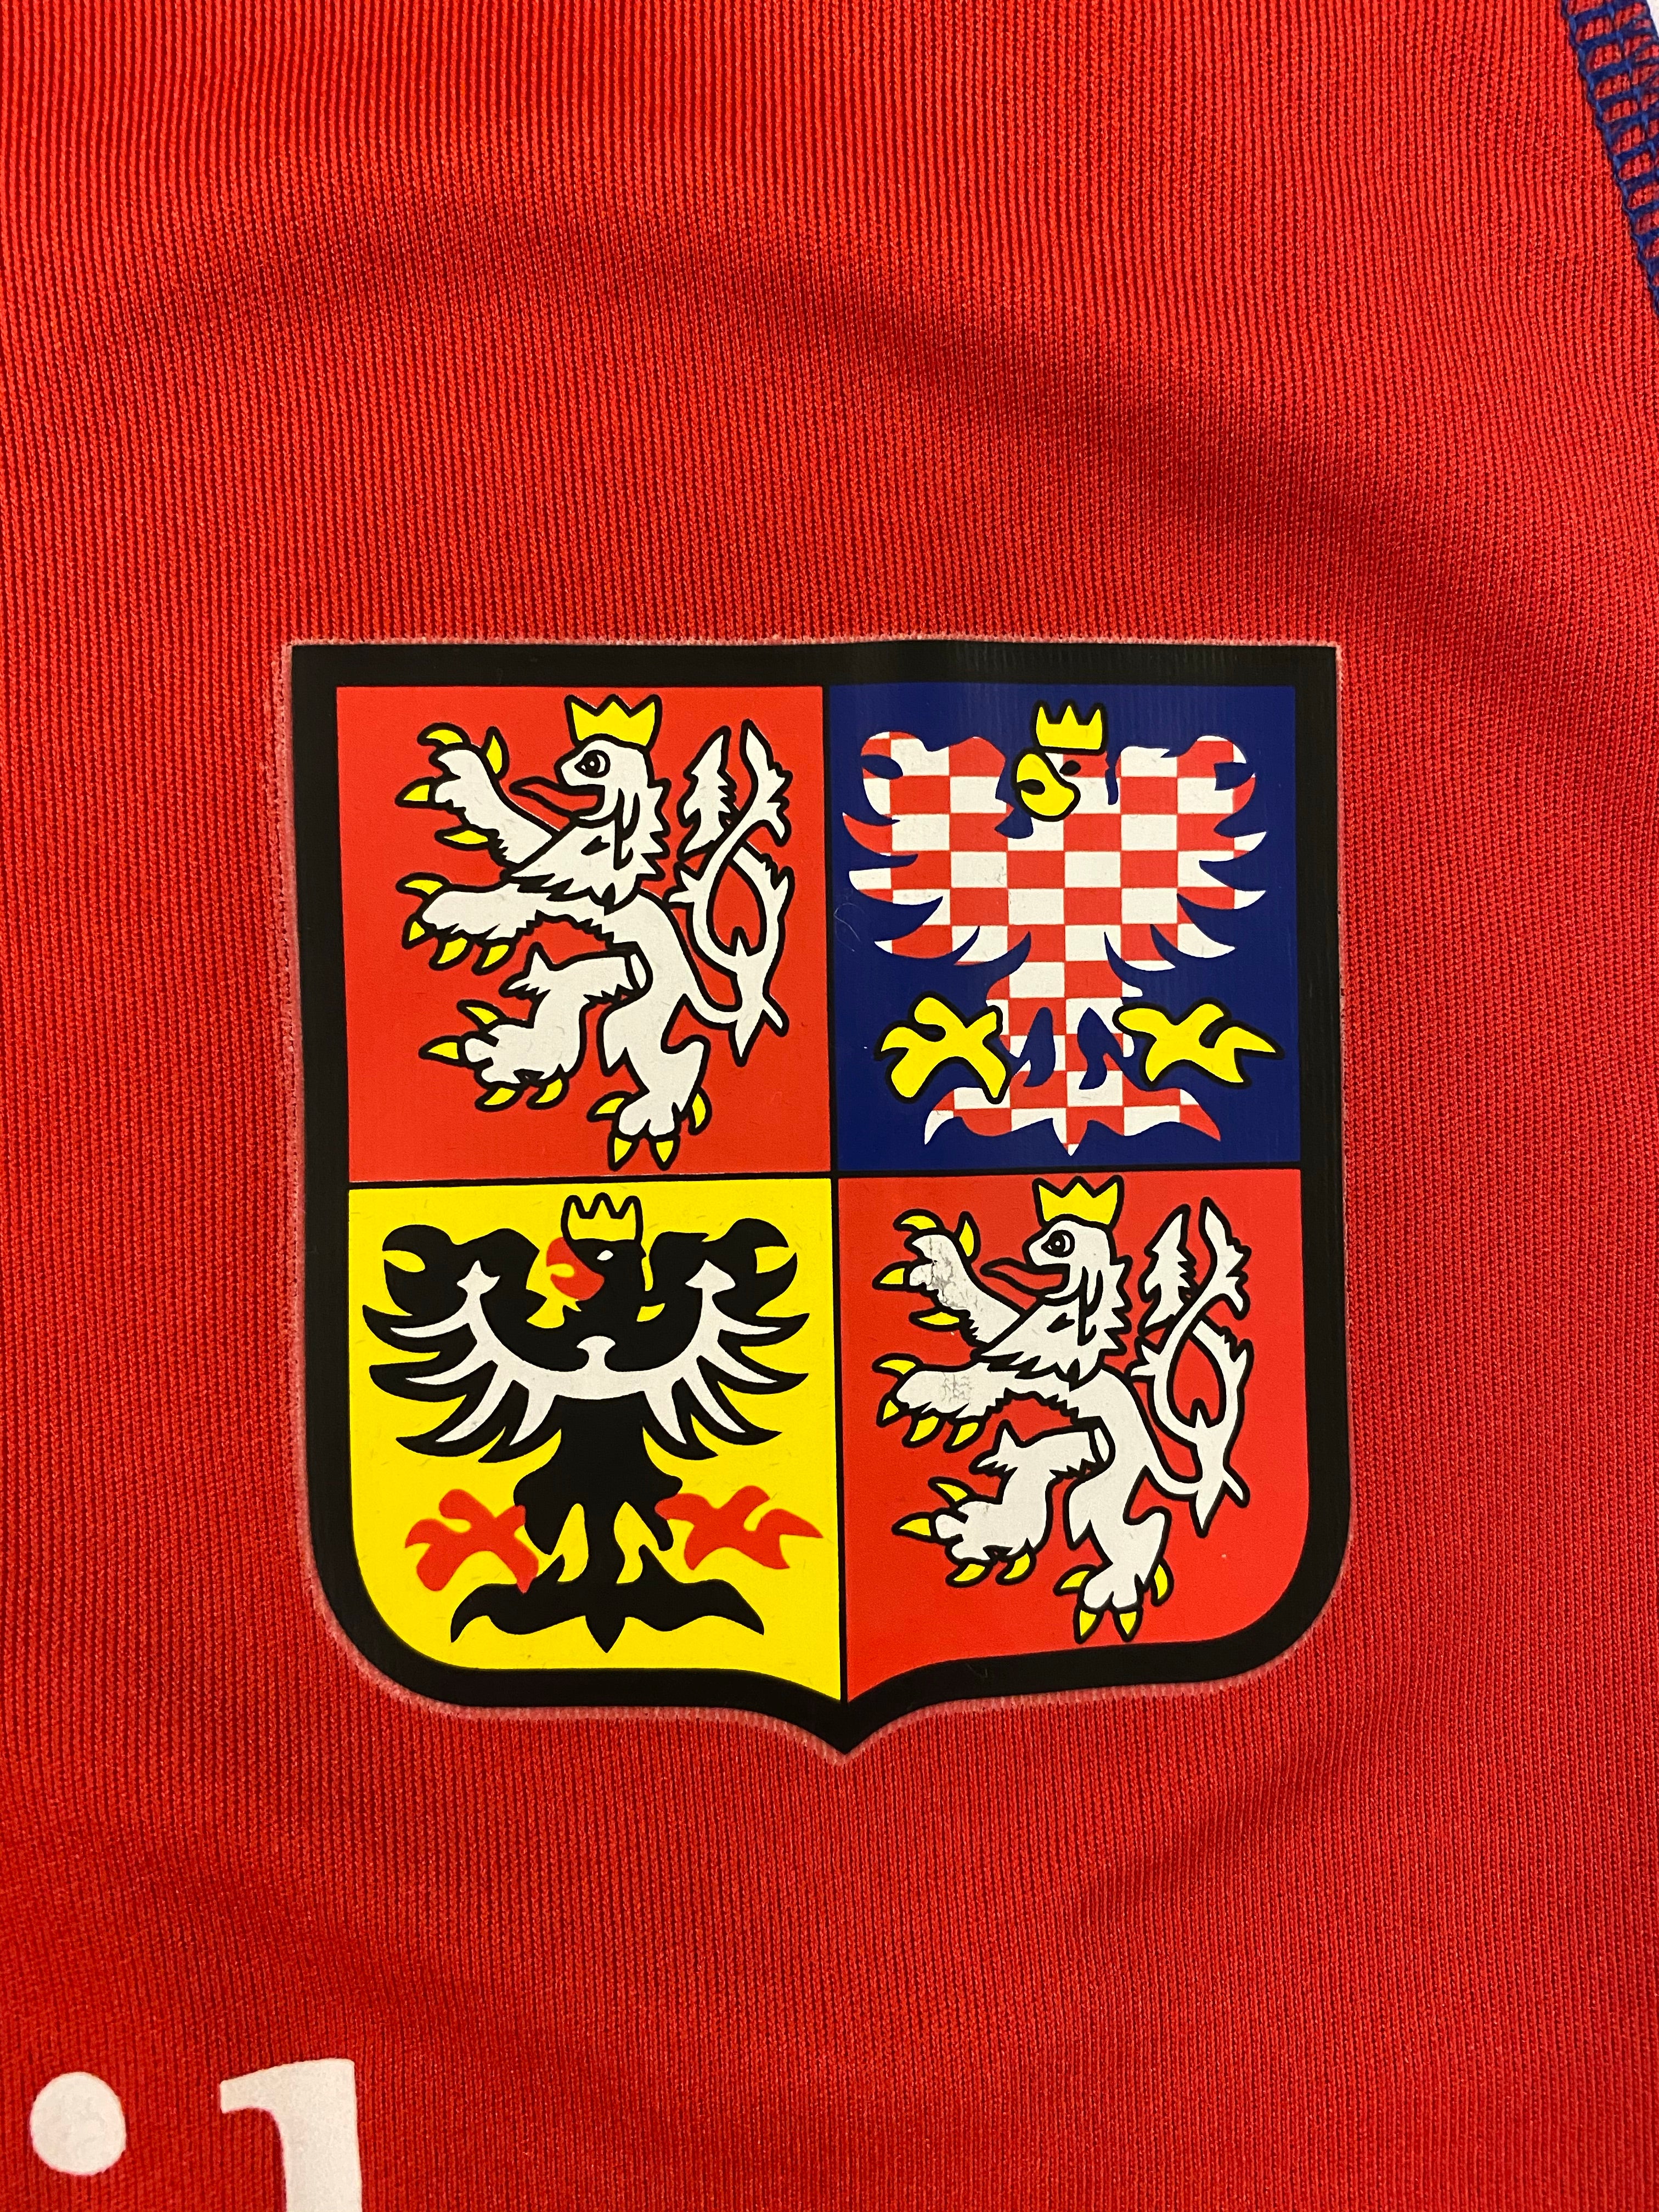 2003/04 Czech Republic Home Shirt (XL) 9/10